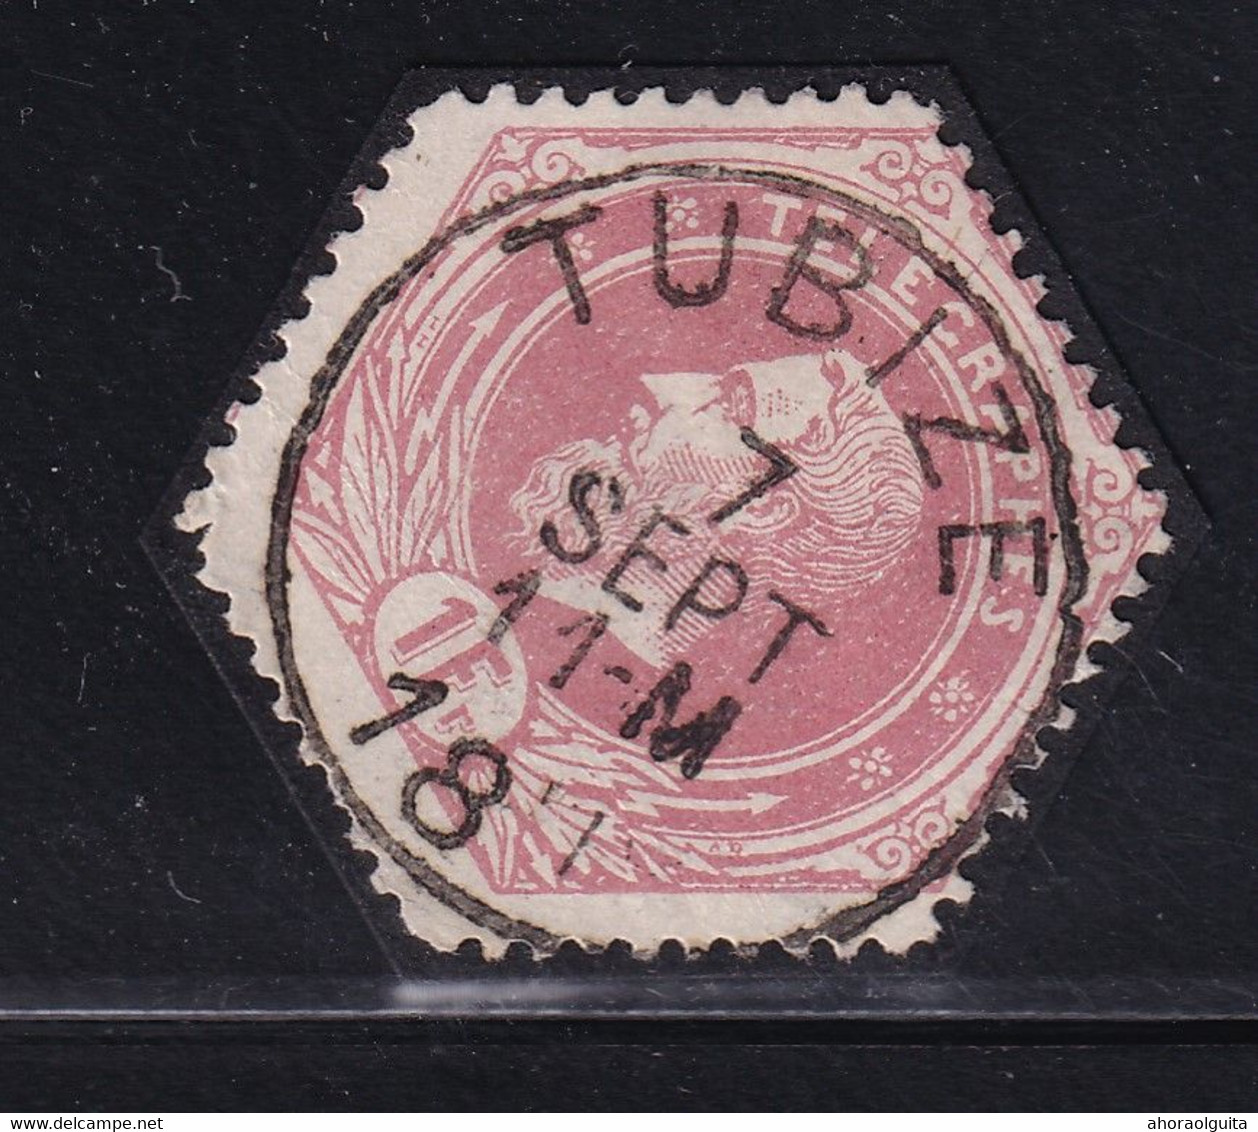 DDDD 433  --  Timbre Télégraphe Cachet Postal Simple Cercle TUBIZE 1891 - Frappe LUXE - Timbres Télégraphes [TG]